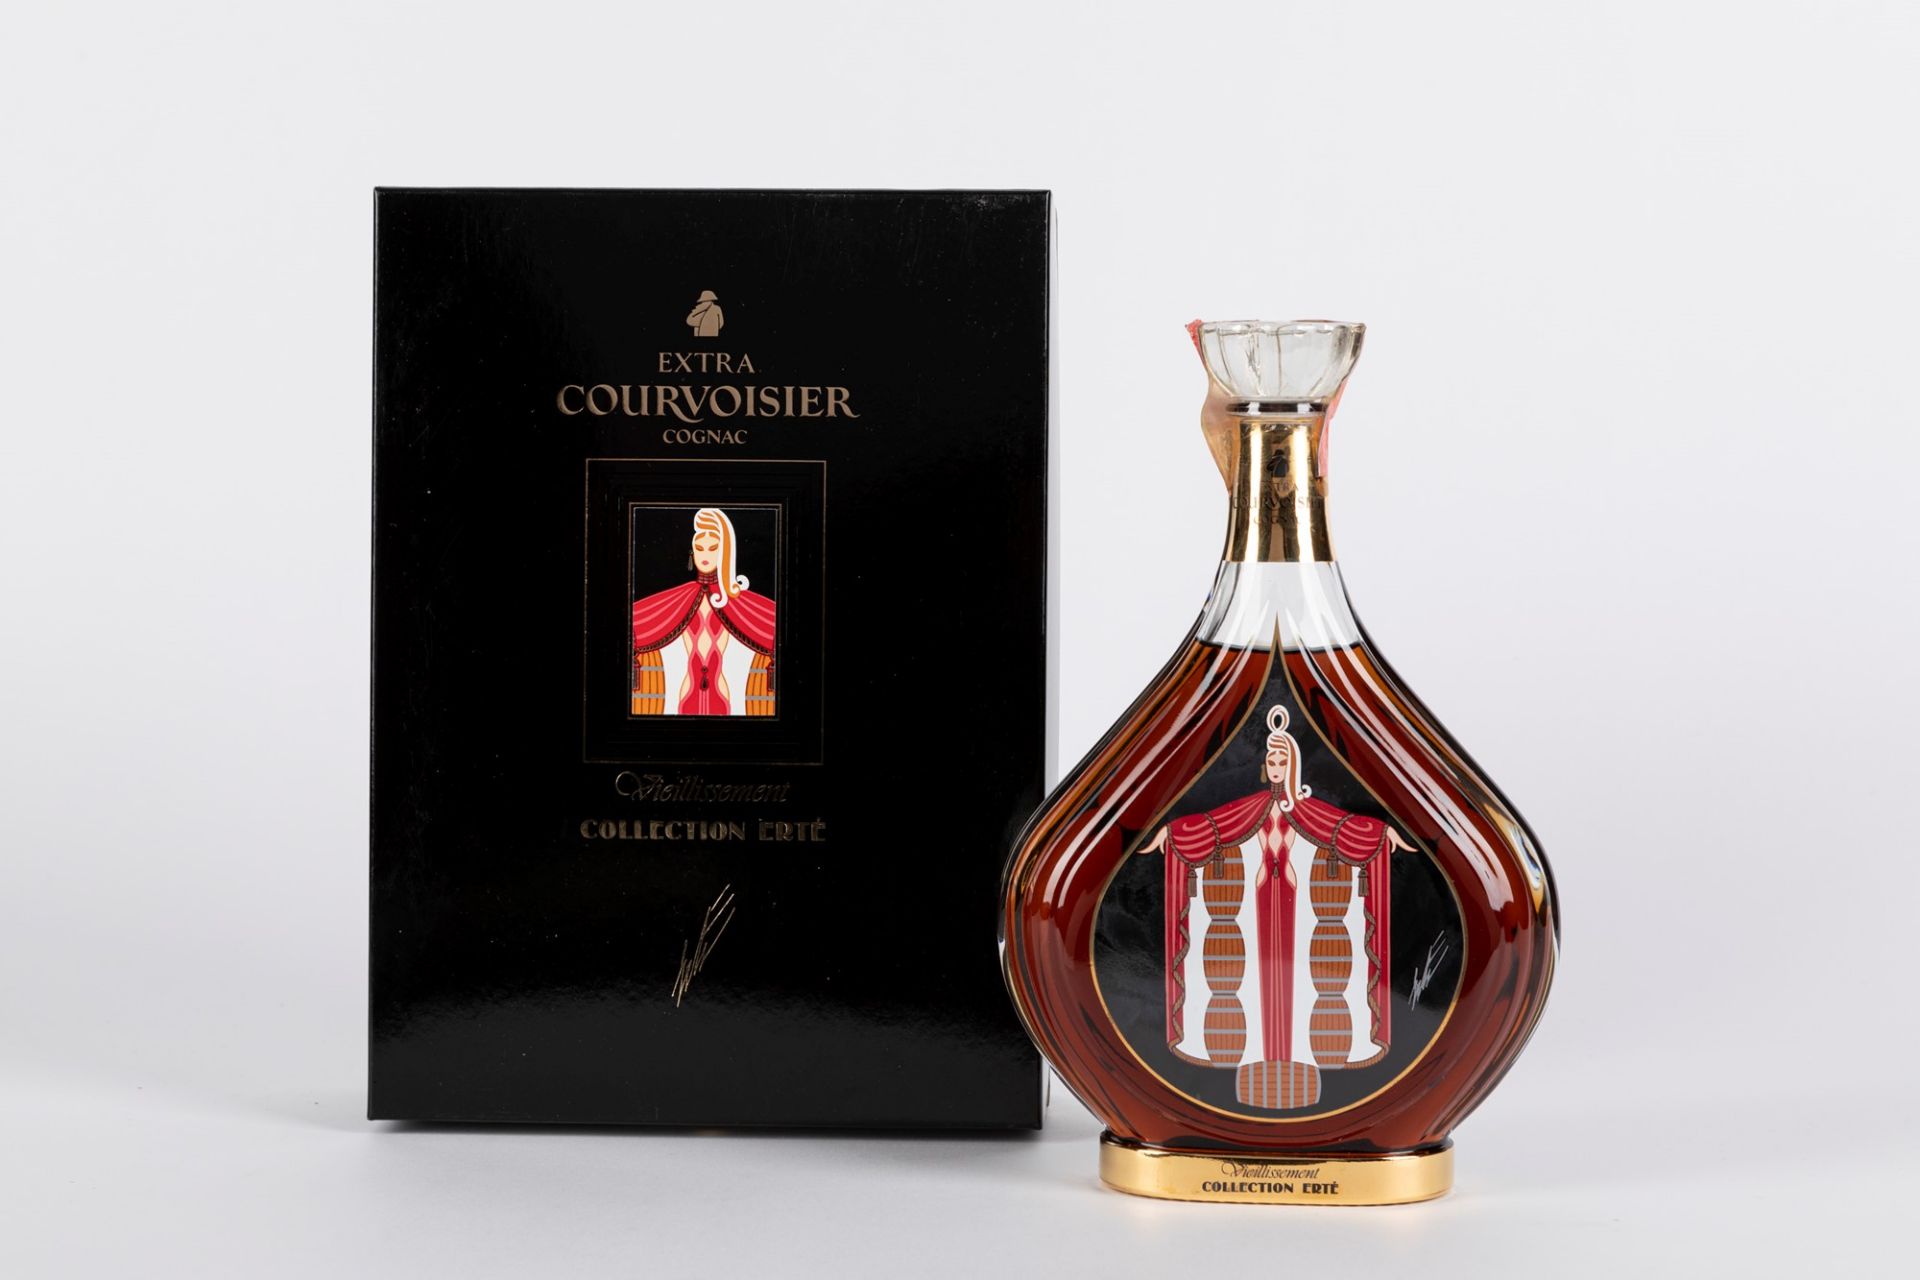 France - Cognac / Courvoisier Collection Ertè 'Vieillissement'